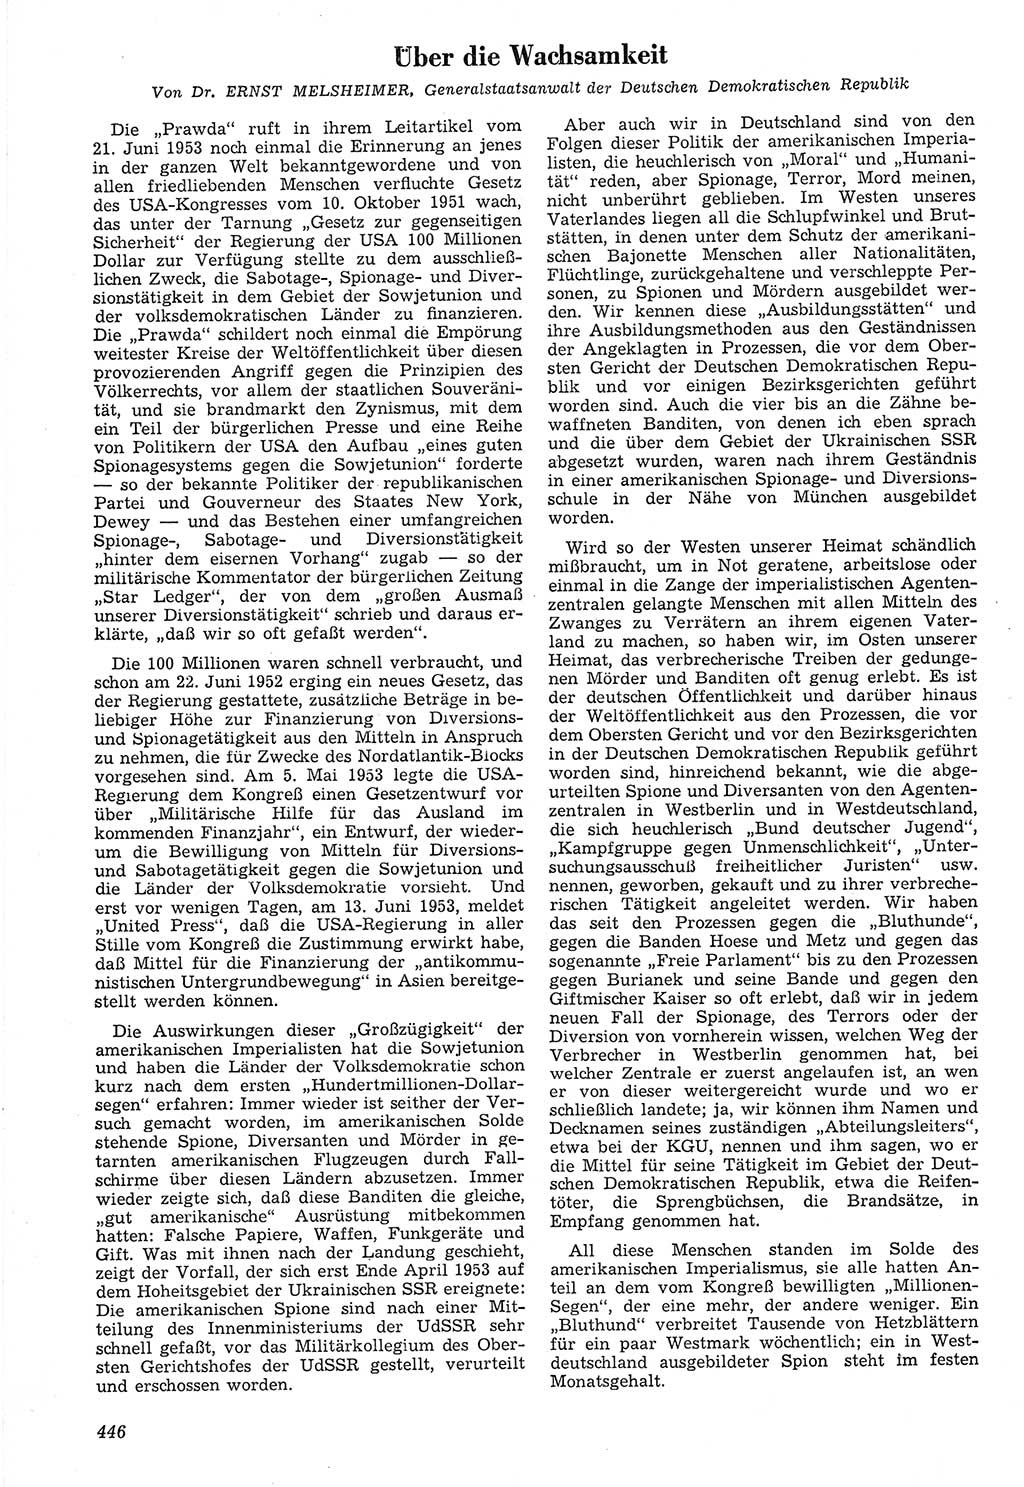 Neue Justiz (NJ), Zeitschrift für Recht und Rechtswissenschaft [Deutsche Demokratische Republik (DDR)], 7. Jahrgang 1953, Seite 446 (NJ DDR 1953, S. 446)